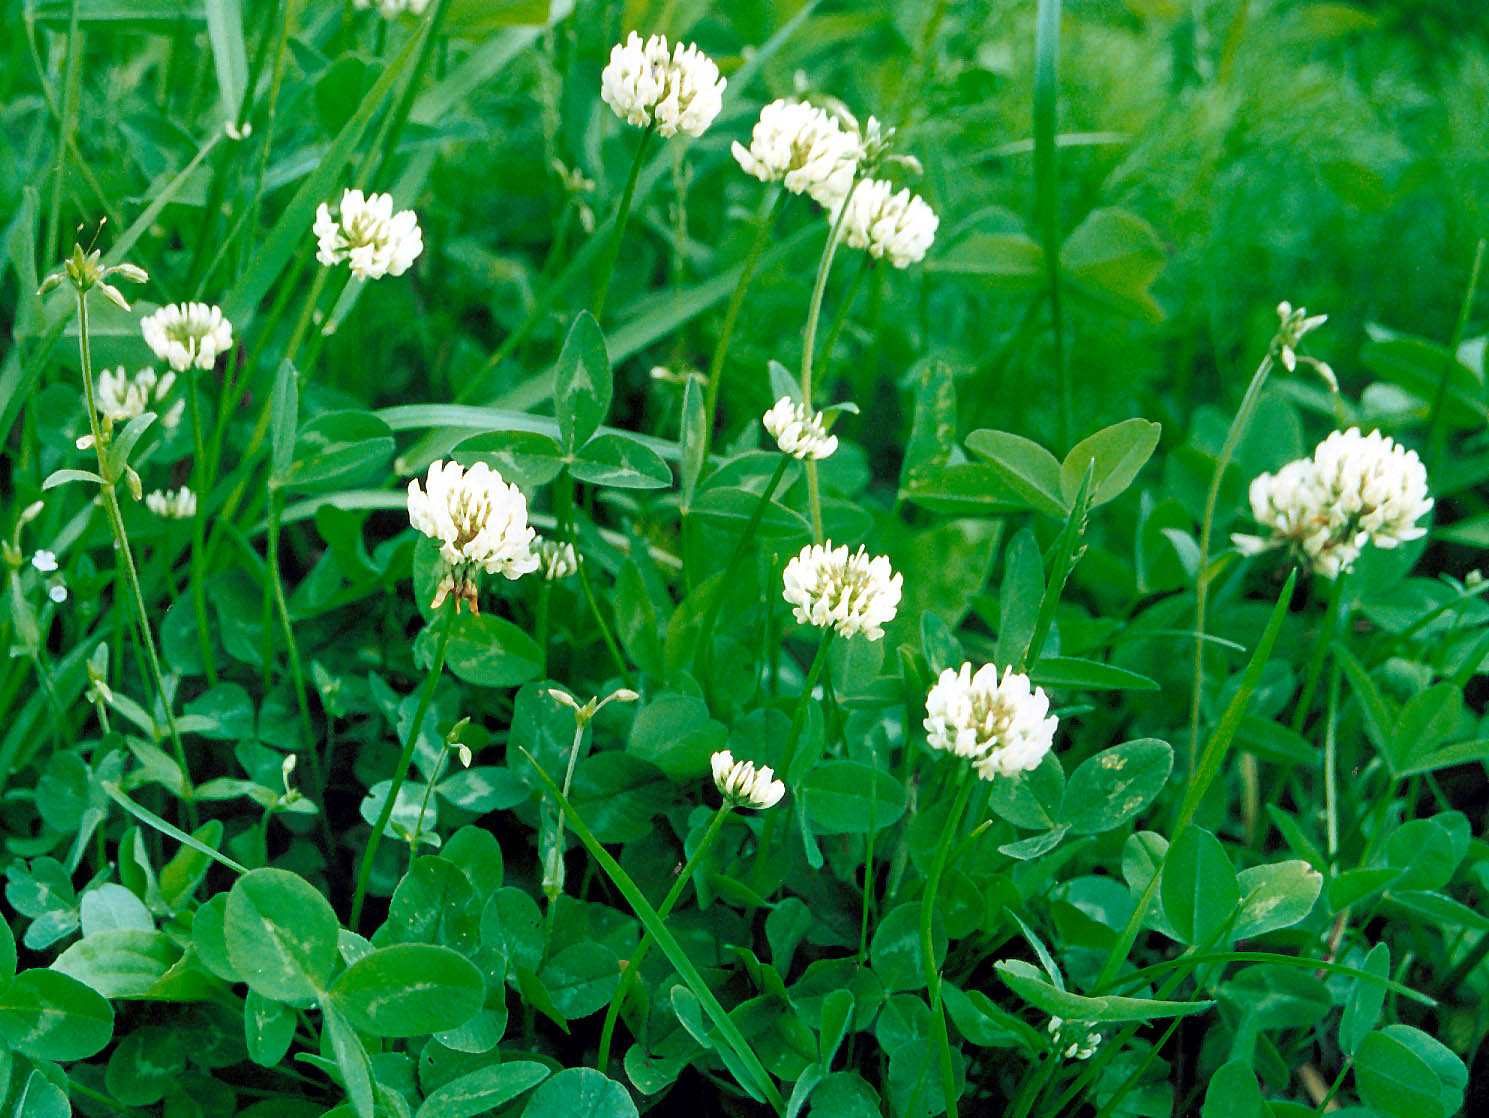  ползучий, клевер белый - Trifolium repens L. | Дикорастущие .